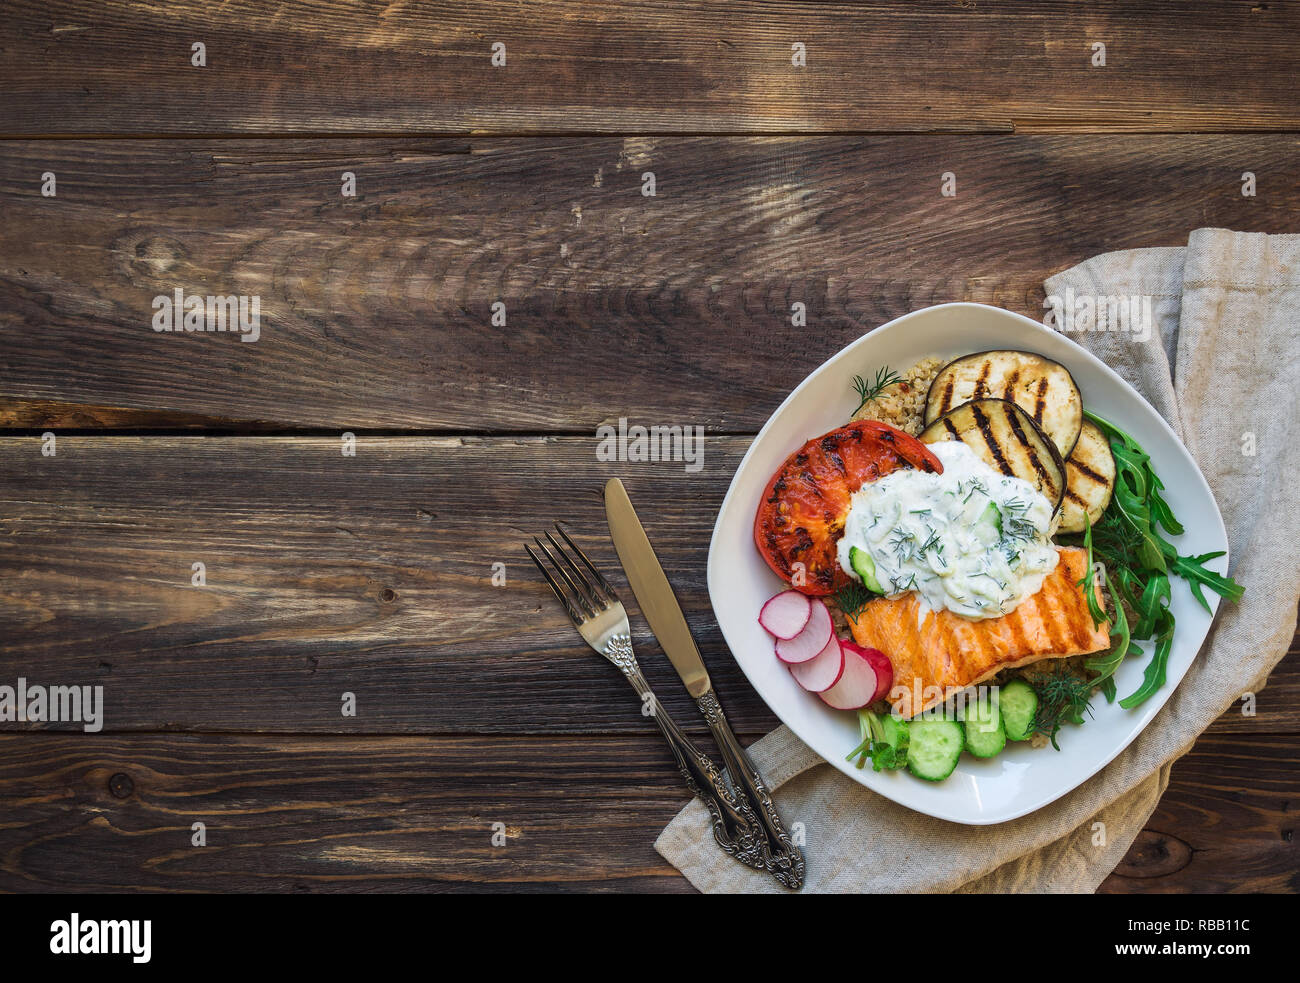 Saumon grillé, tomates et aubergines avec le quinoa et sauce tzatziki sur fond de bois rustique. Dîner sain. Vue d'en haut. Copie espace salon. Banque D'Images